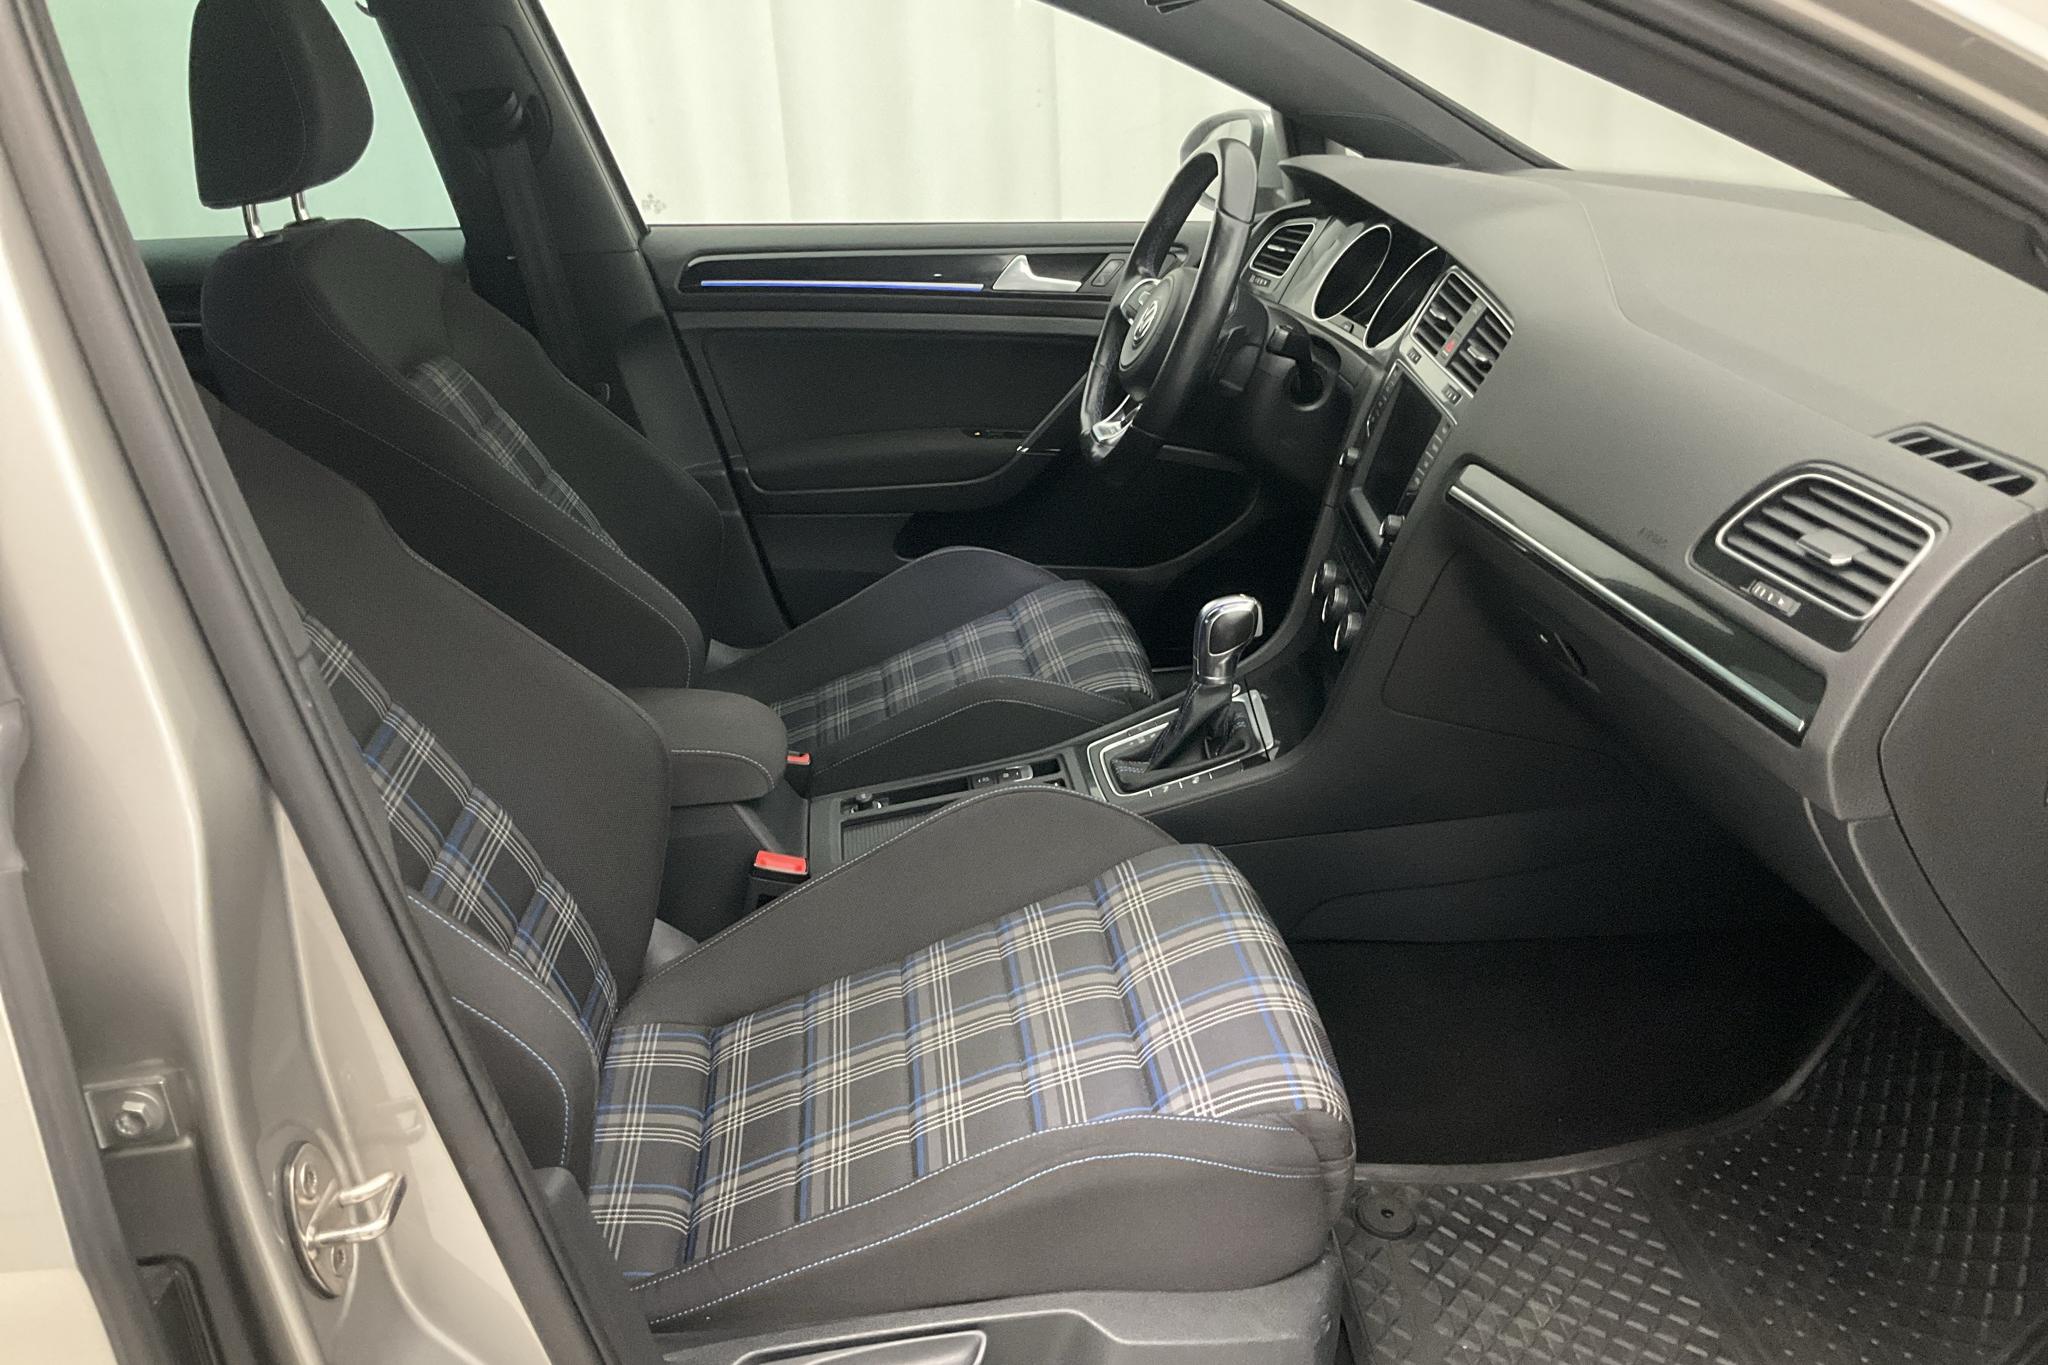 VW Golf VII 1.4 Plug-in-Hybrid 5dr (204hk) - 74 340 km - Automatic - silver - 2015